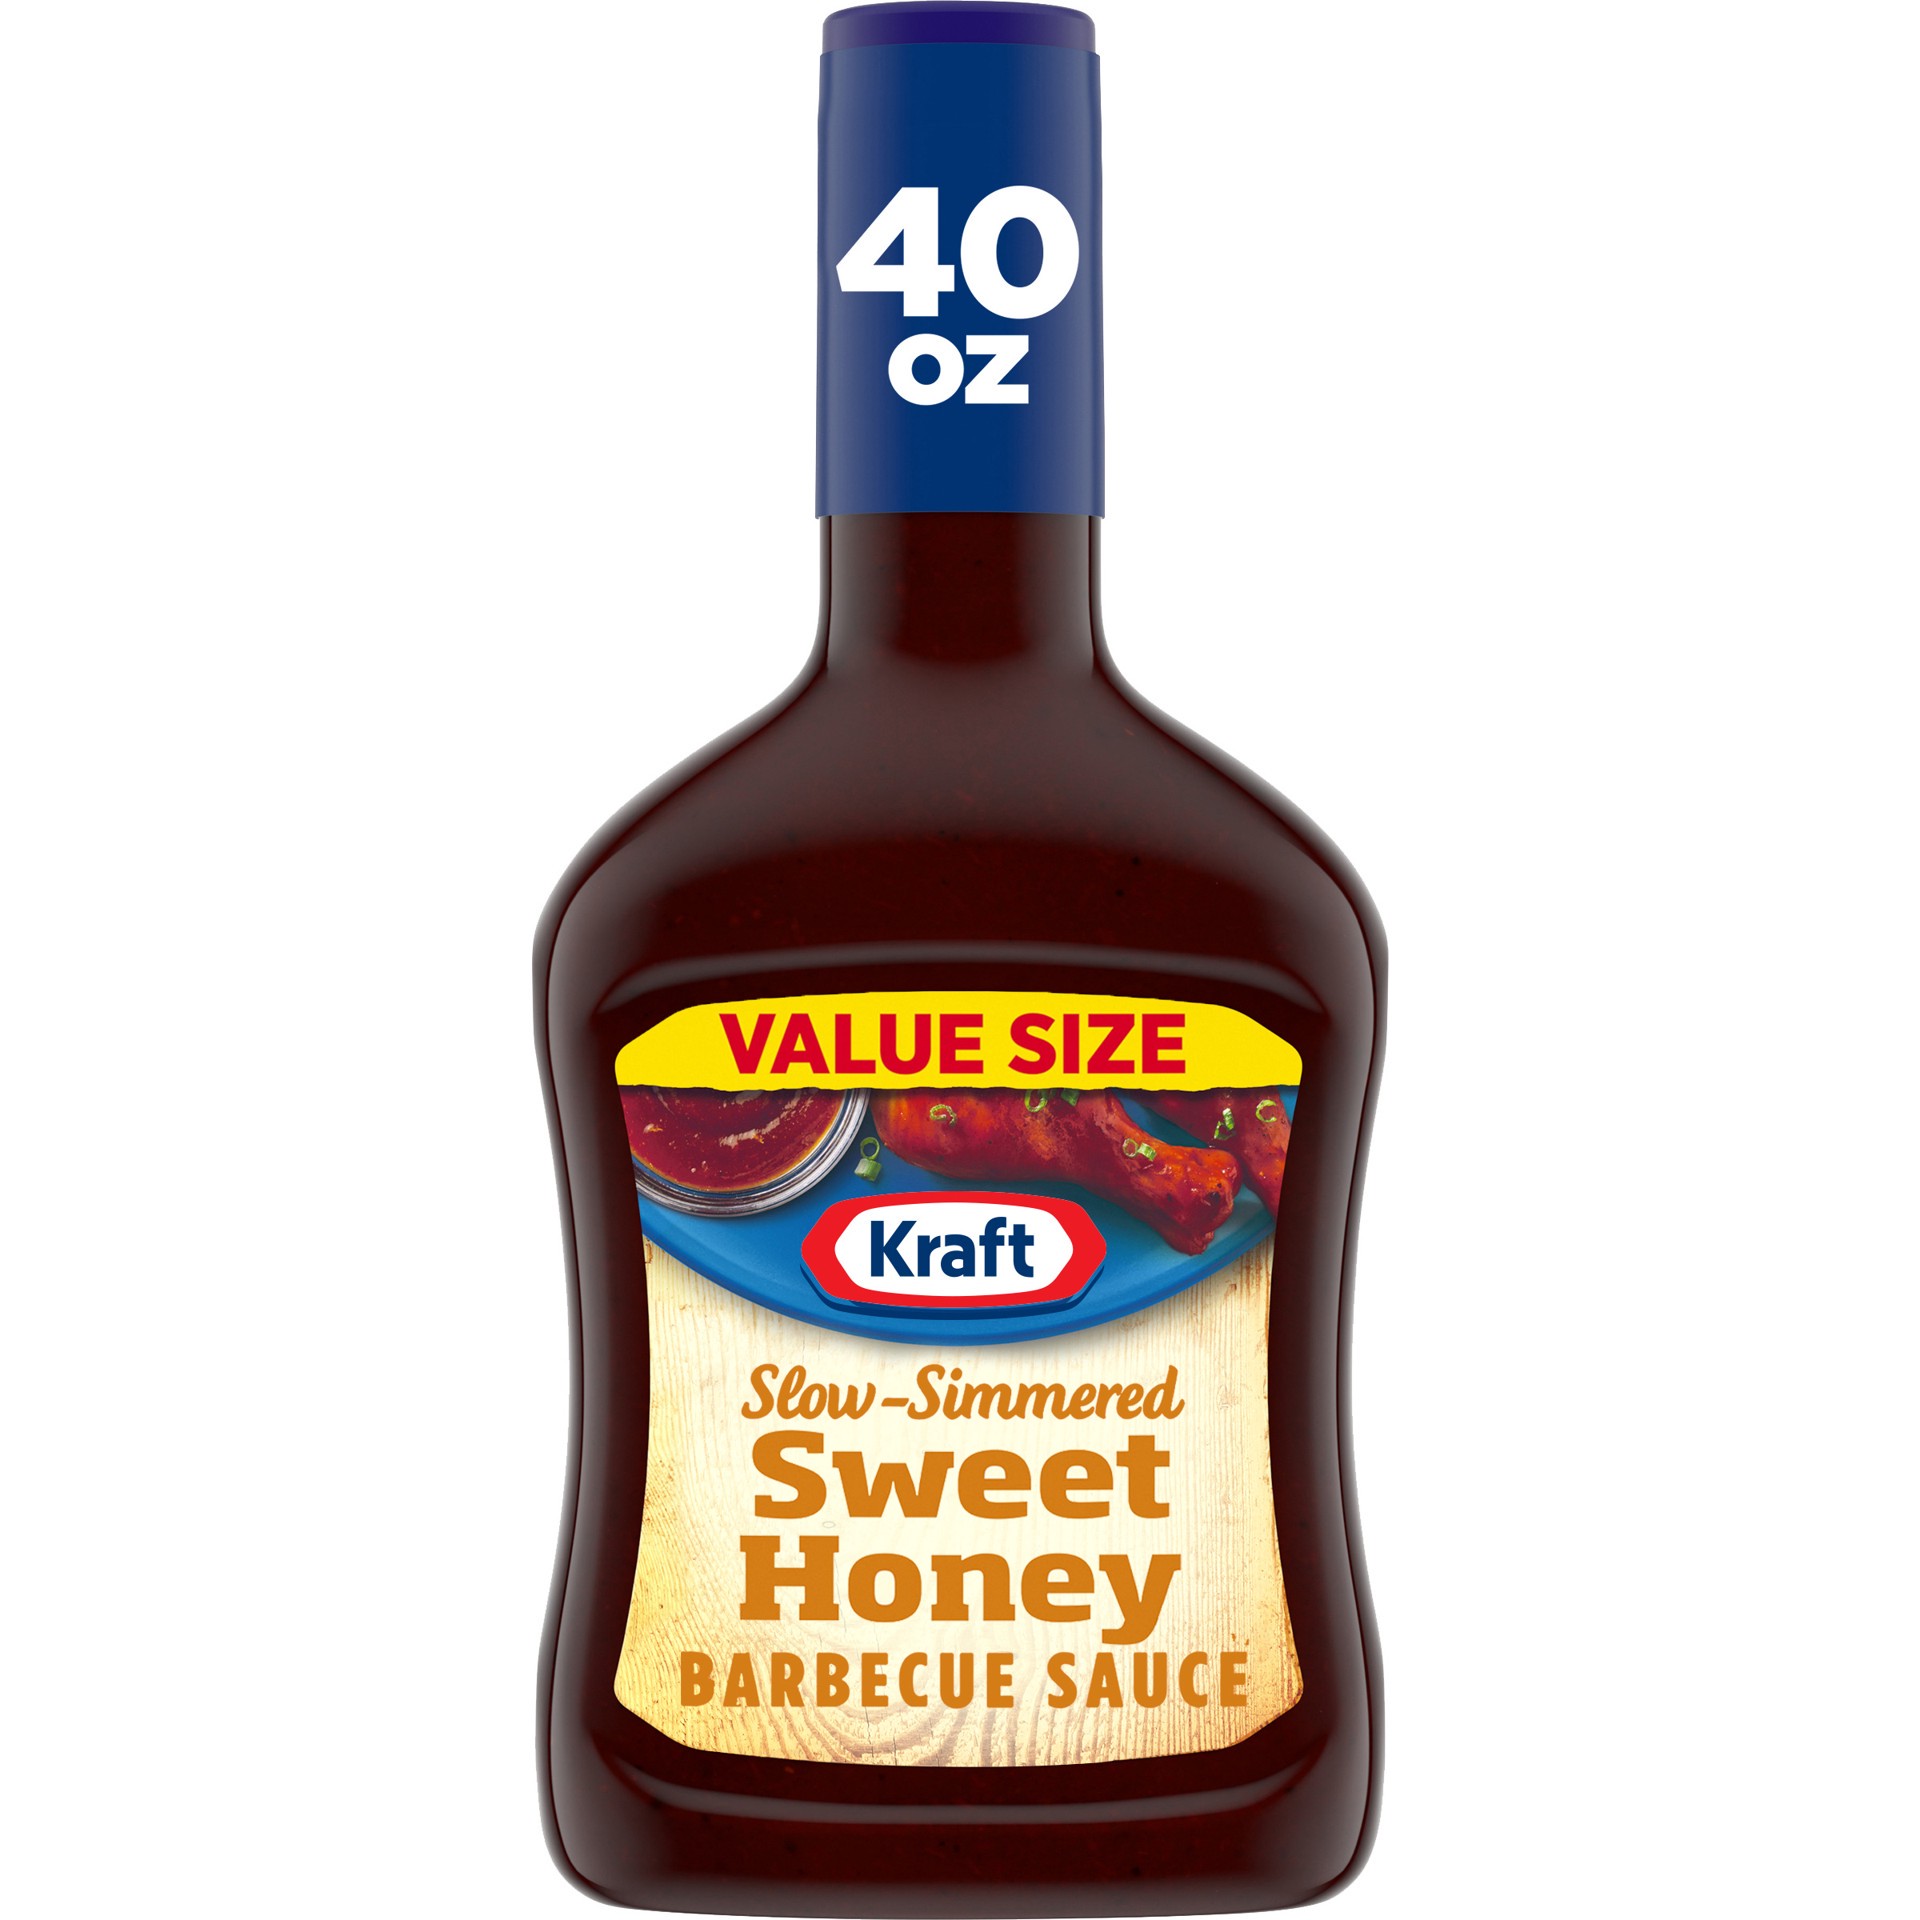 slide 1 of 14, Kraft Sweet Honey Slow-Simmered Barbecue Sauce Value Size, 40 oz Bottle, 40 oz